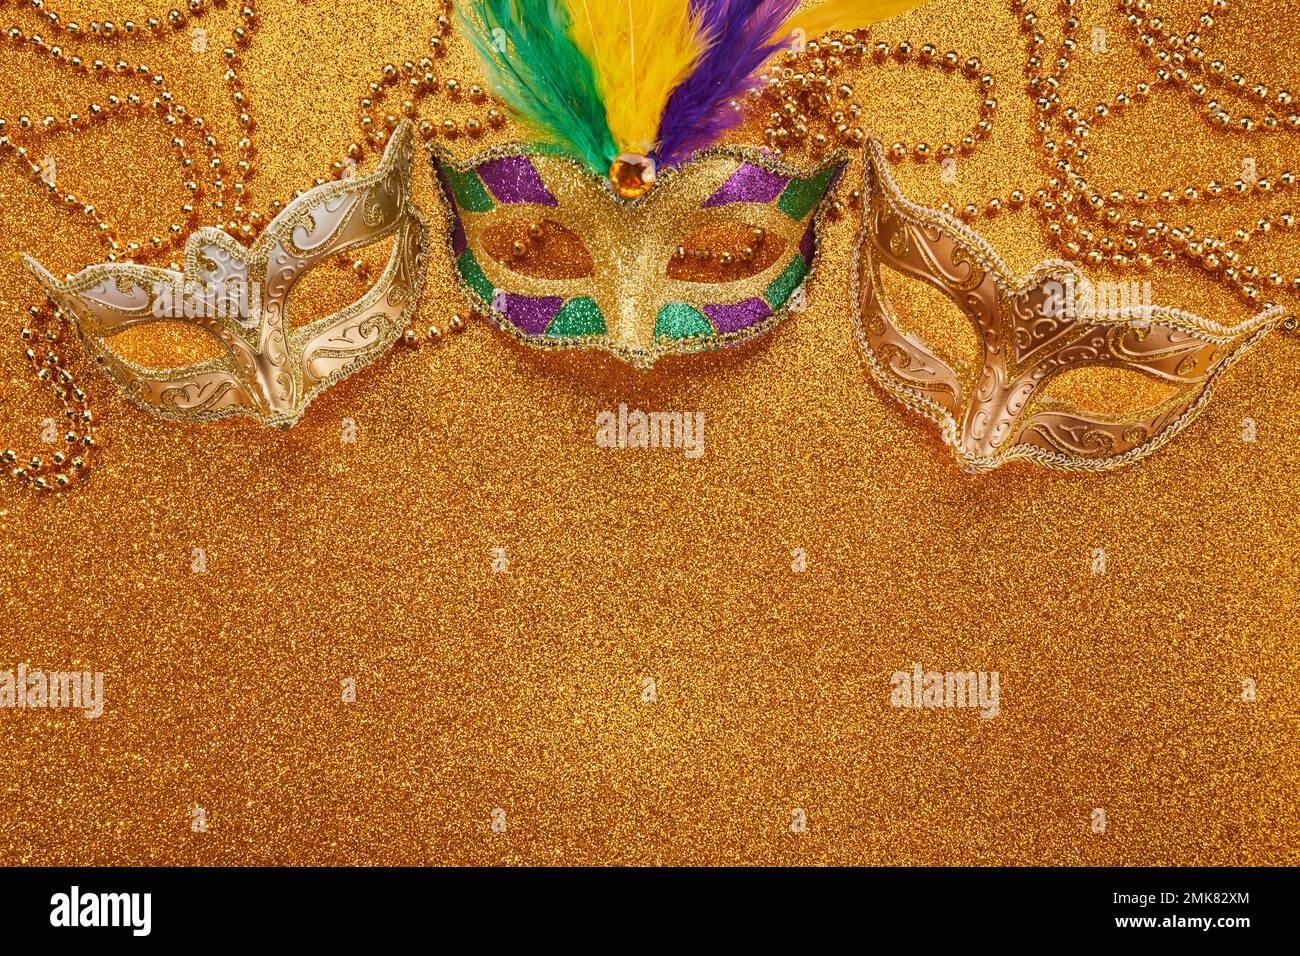 Mardi gras ou masque de carnaval avec perles sur fond doré brillant. Masque vénitien. Banque D'Images